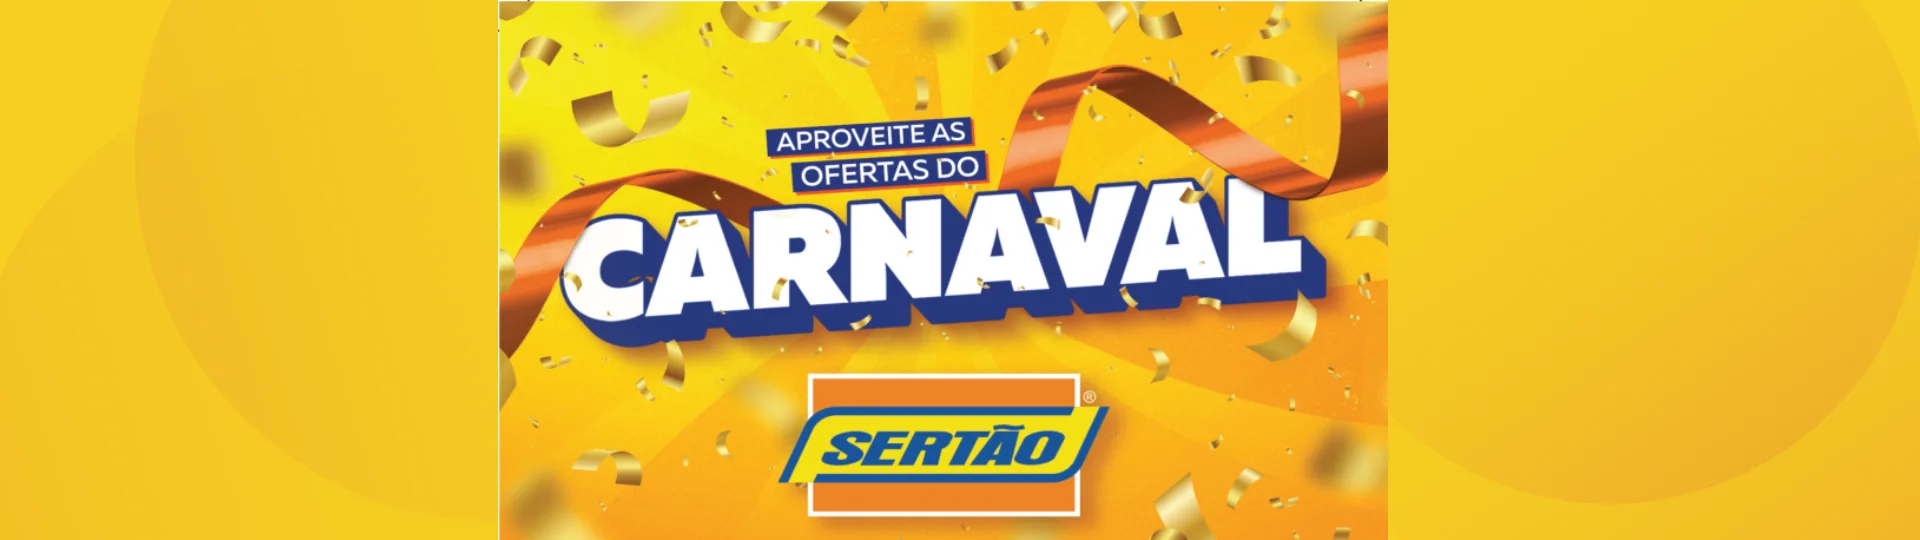 Carnaval Sertão - Aproveite a Folia de Ofertas